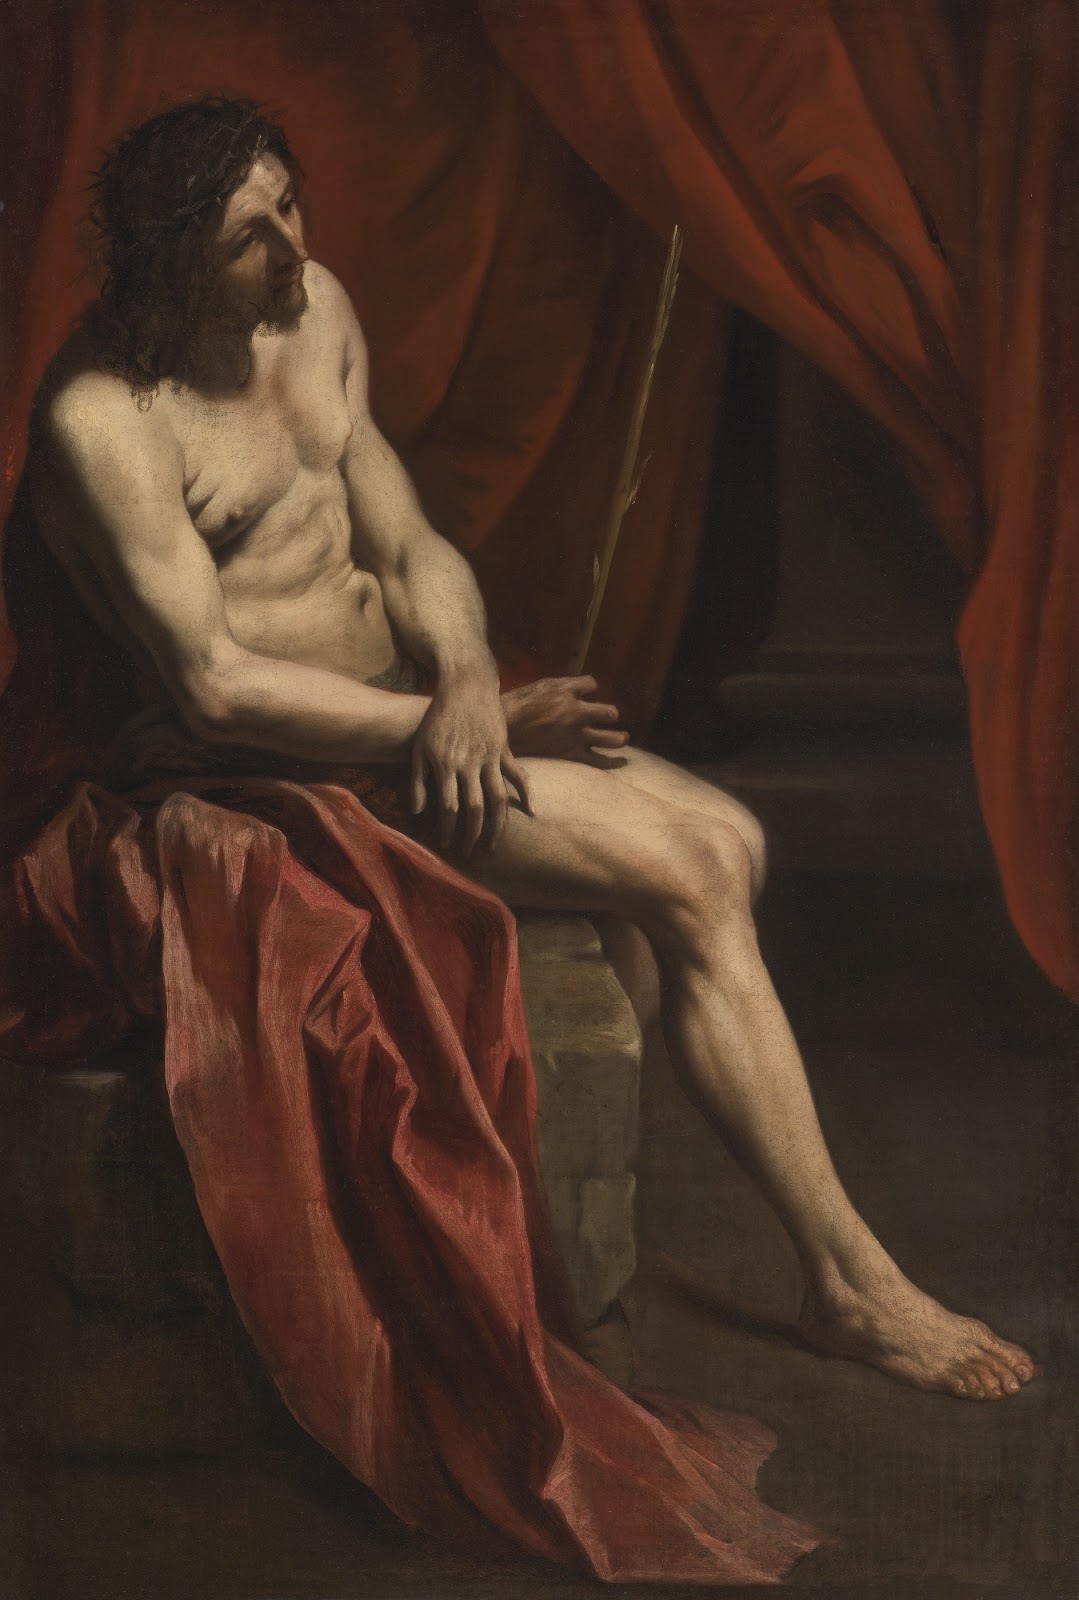 Gian+Lorenzo+Bernini-1598-1680 (38).jpg